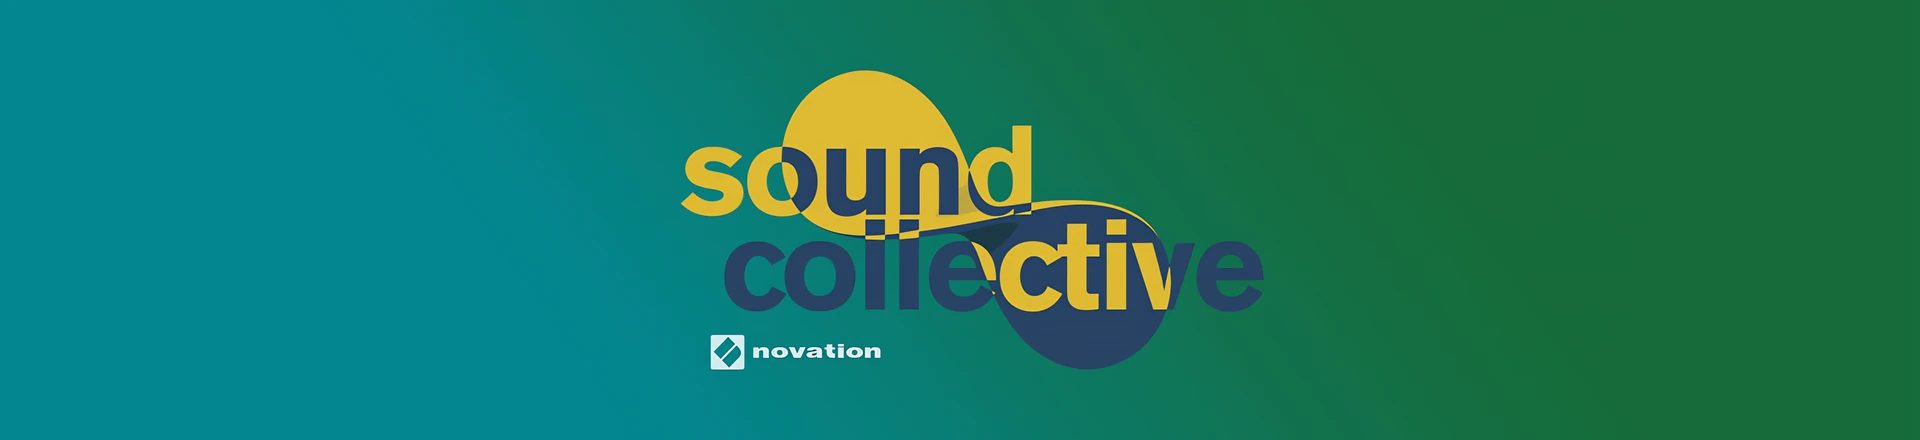 Novation udostępnił świąteczną paczkę Sound Collective